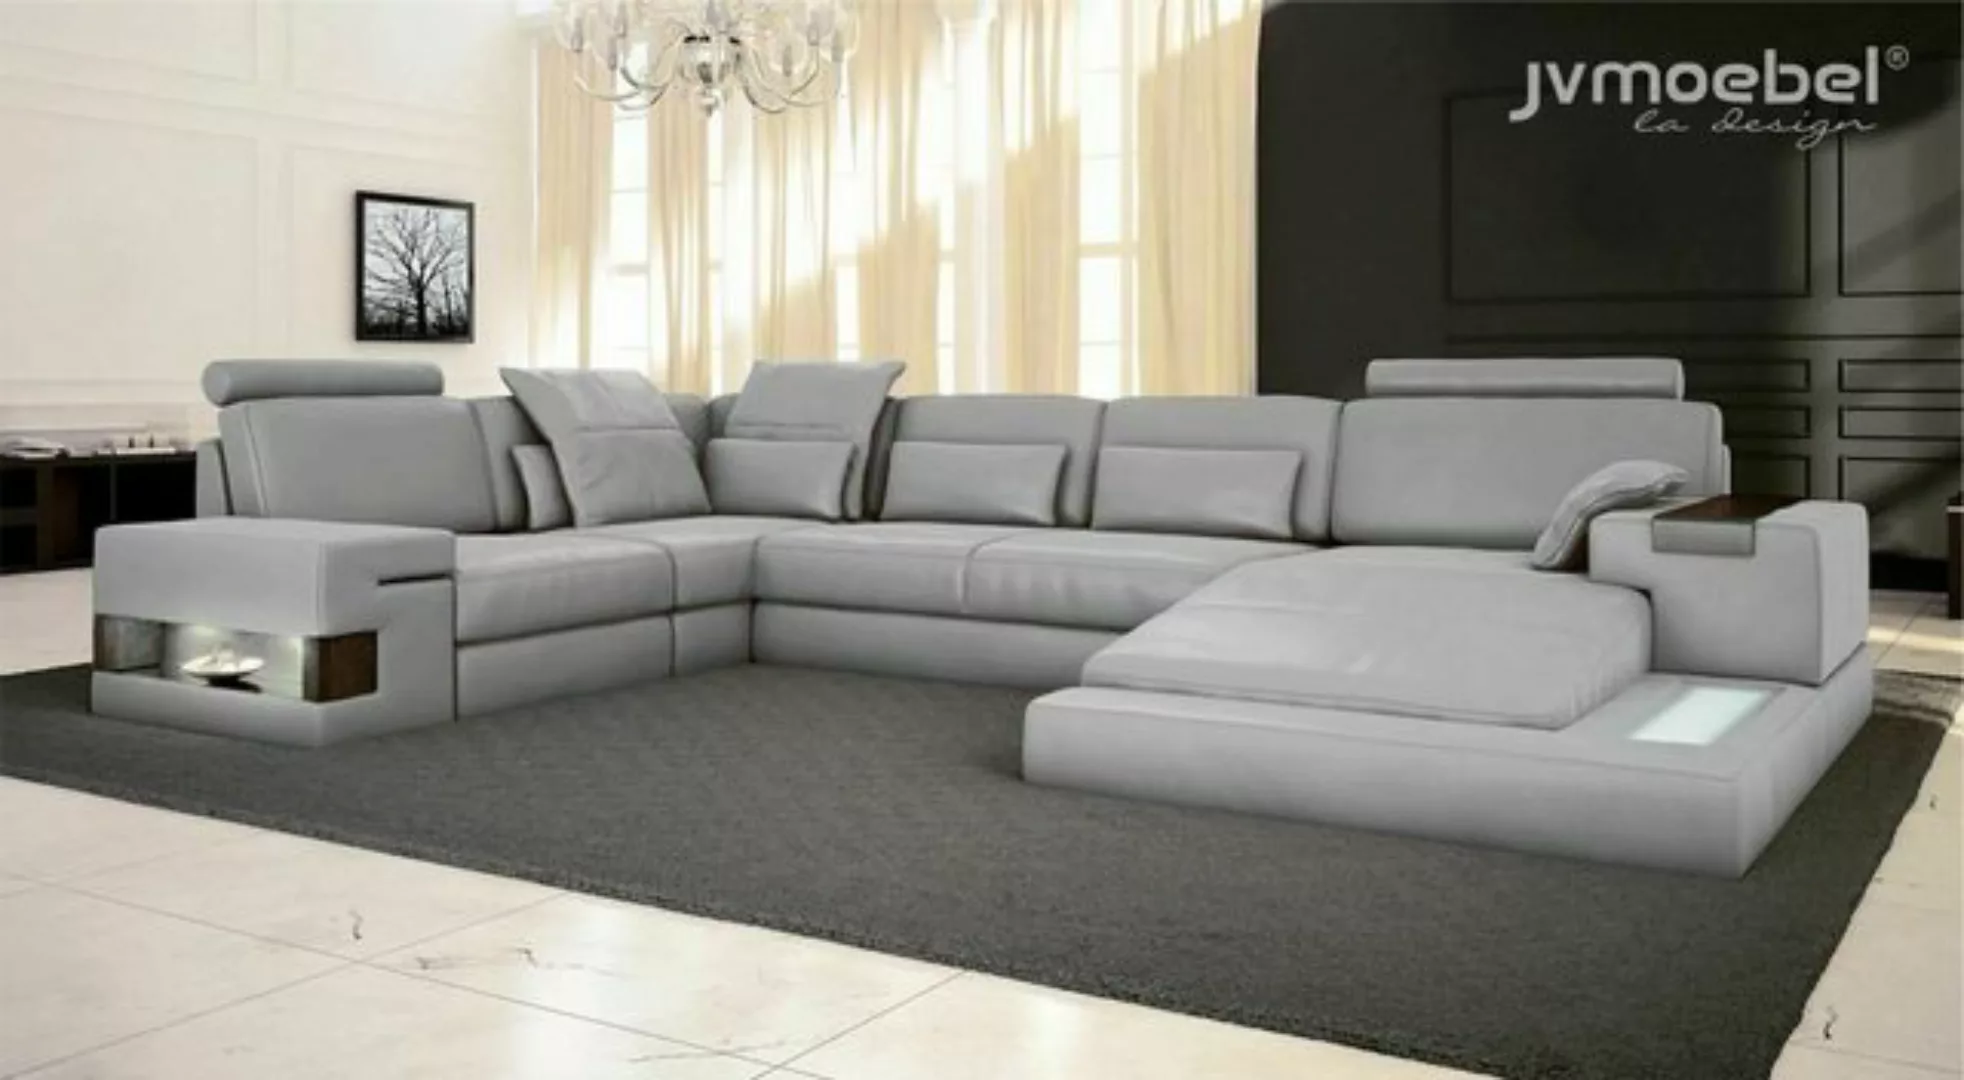 JVmoebel Ecksofa Schlafsofa Couch Design Polster Textil Eck Wohnlandschaft günstig online kaufen